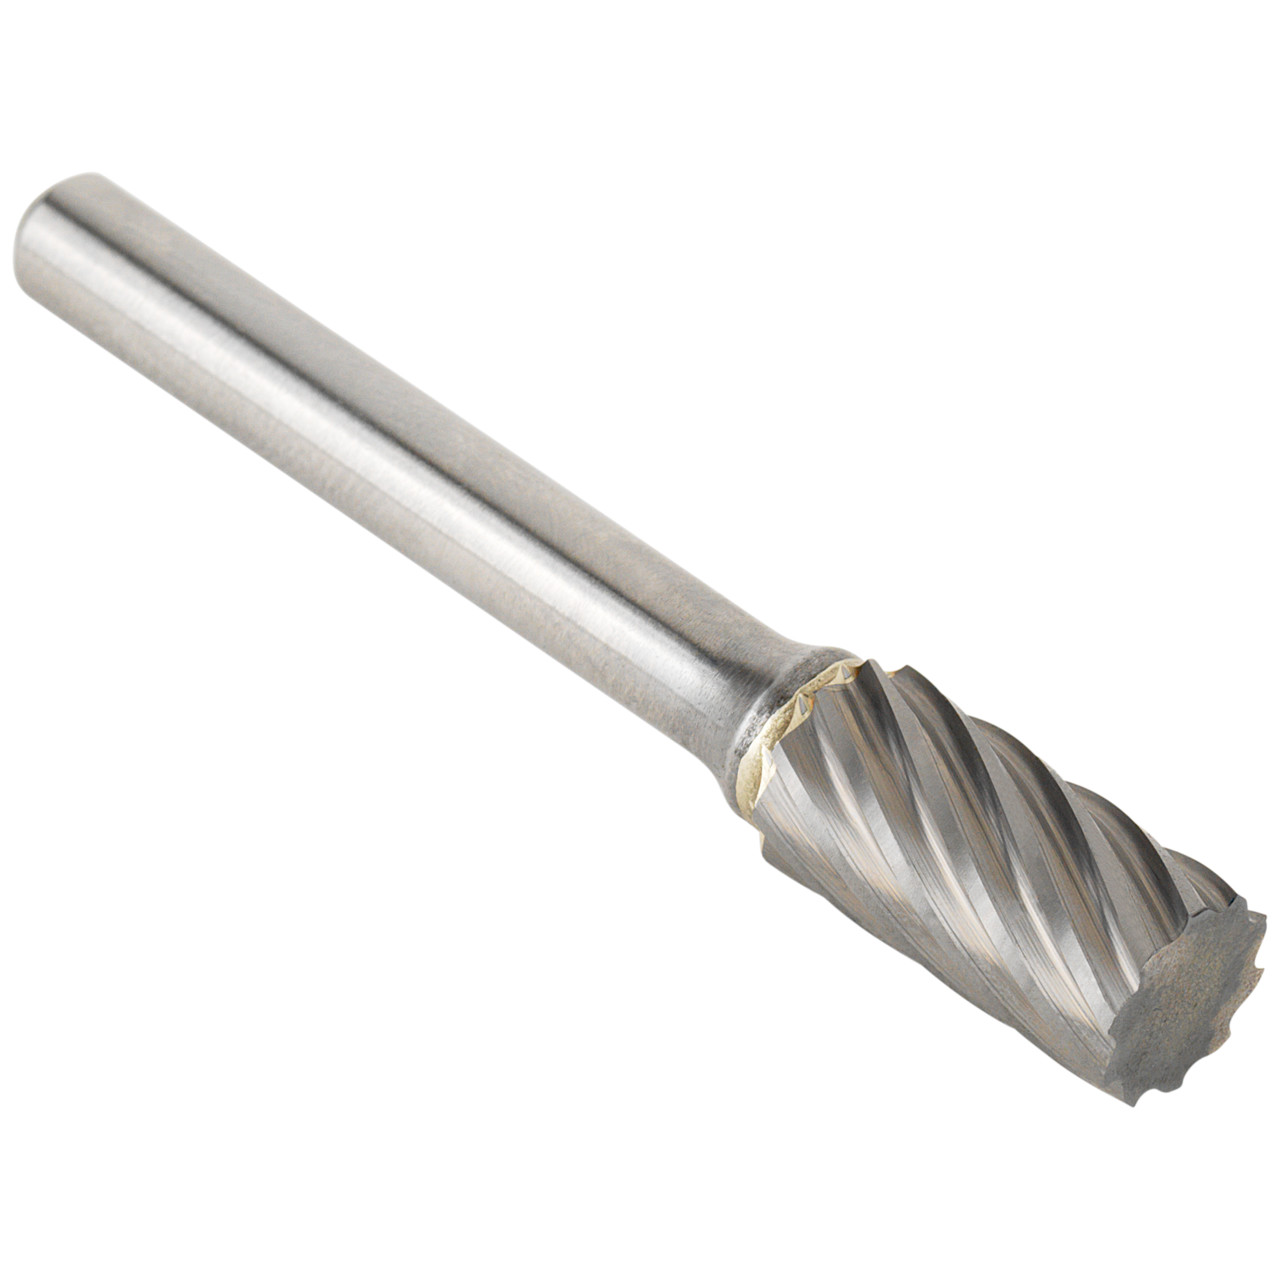 Tyrolit Hardmetalen frees DxT-SxL 6x18-6x50 Voor roestvrij staal, vorm: 52ZYA - cilinder, Art. 34213606